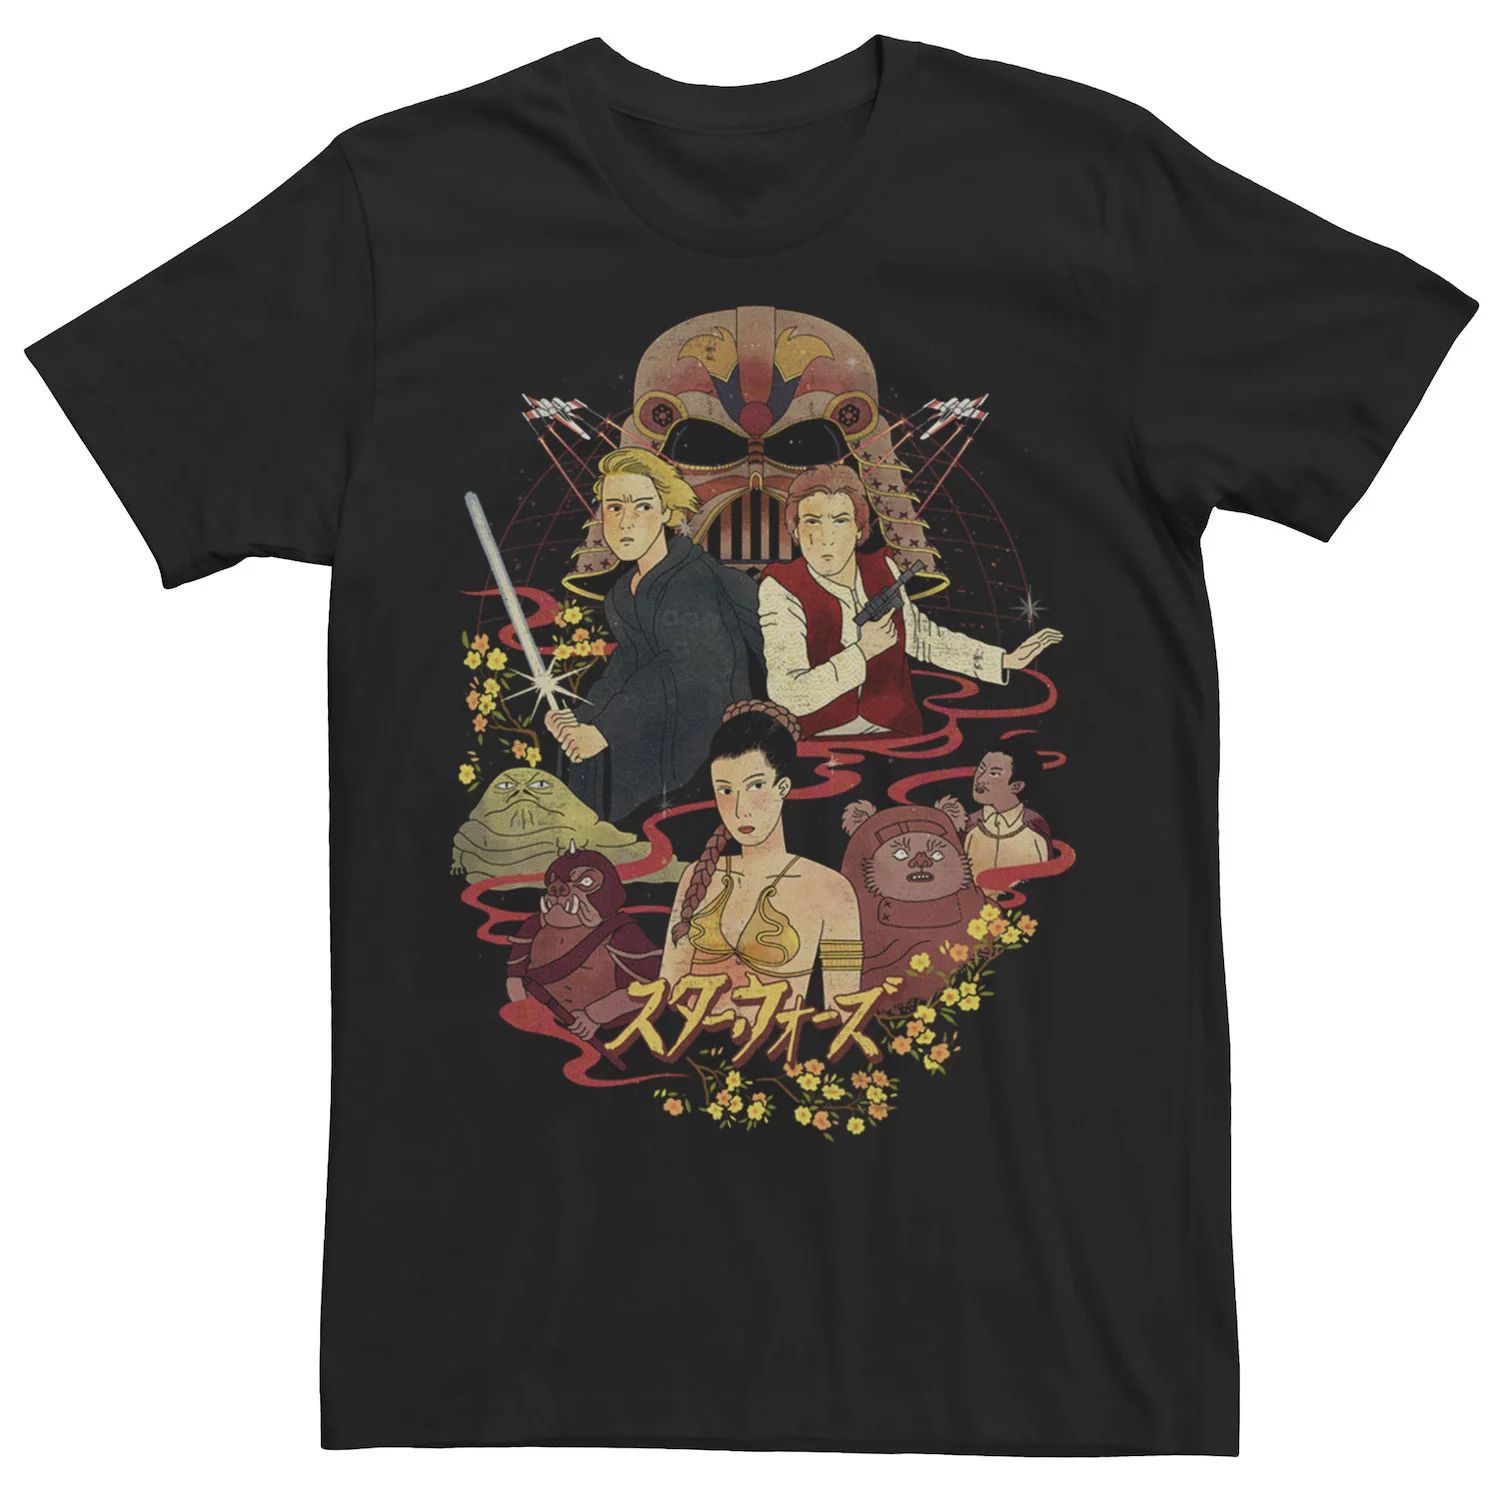 Мужская футболка с плакатом с изображением кандзи Star Wars